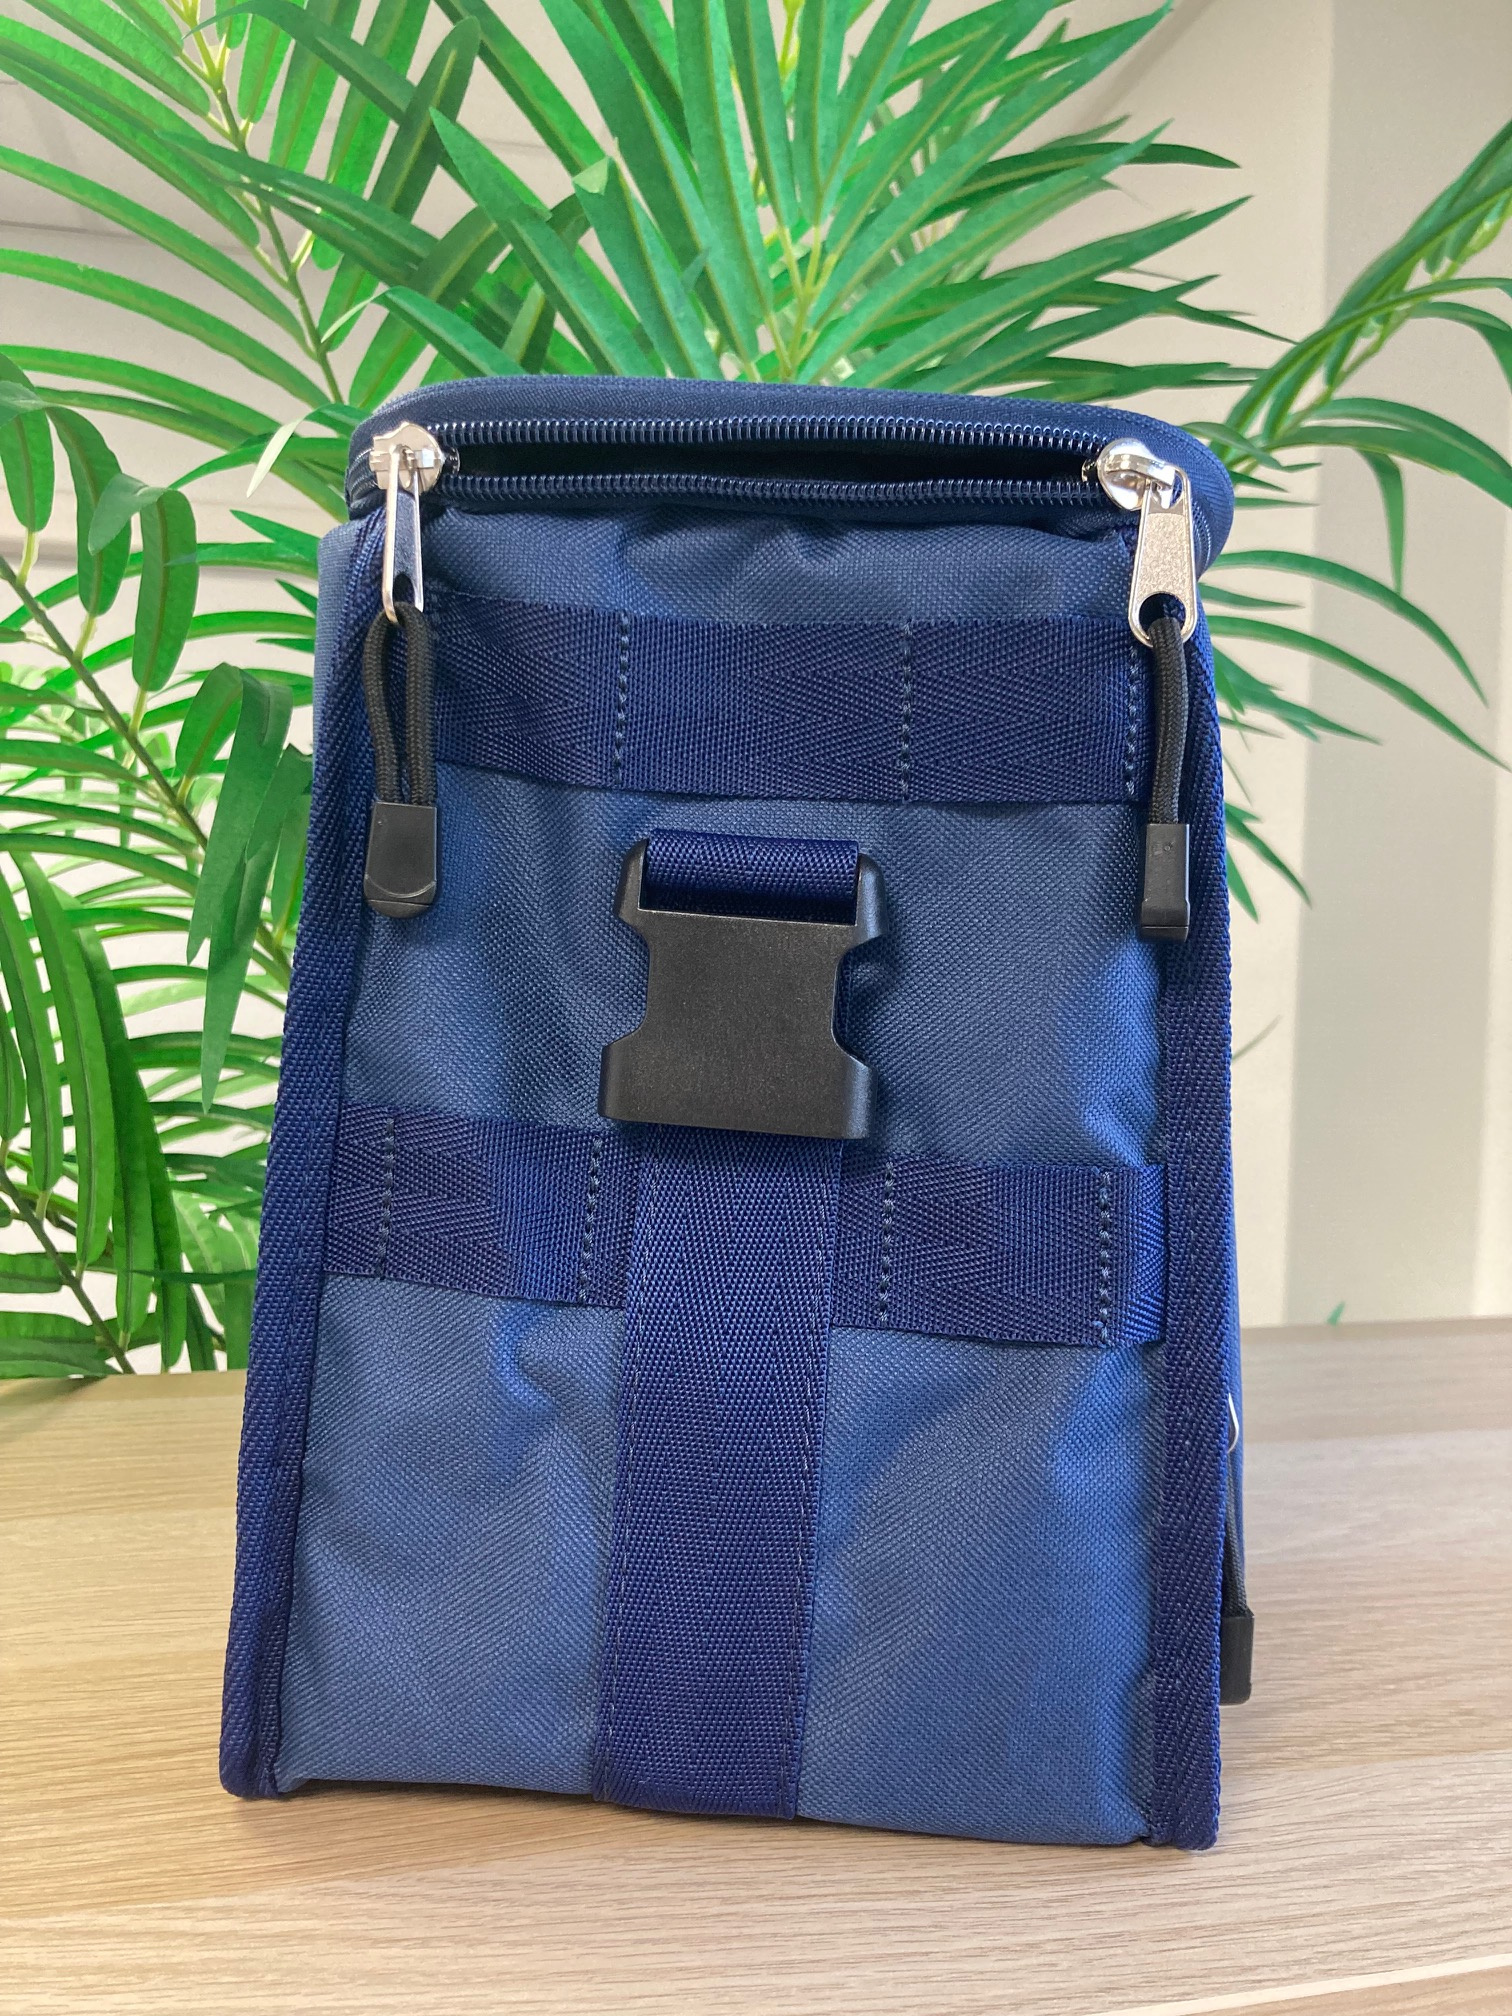 tablelya malette médicale  infirmière grande capacité coté accessoires  multicompartiments bleu marine foncé comed bag